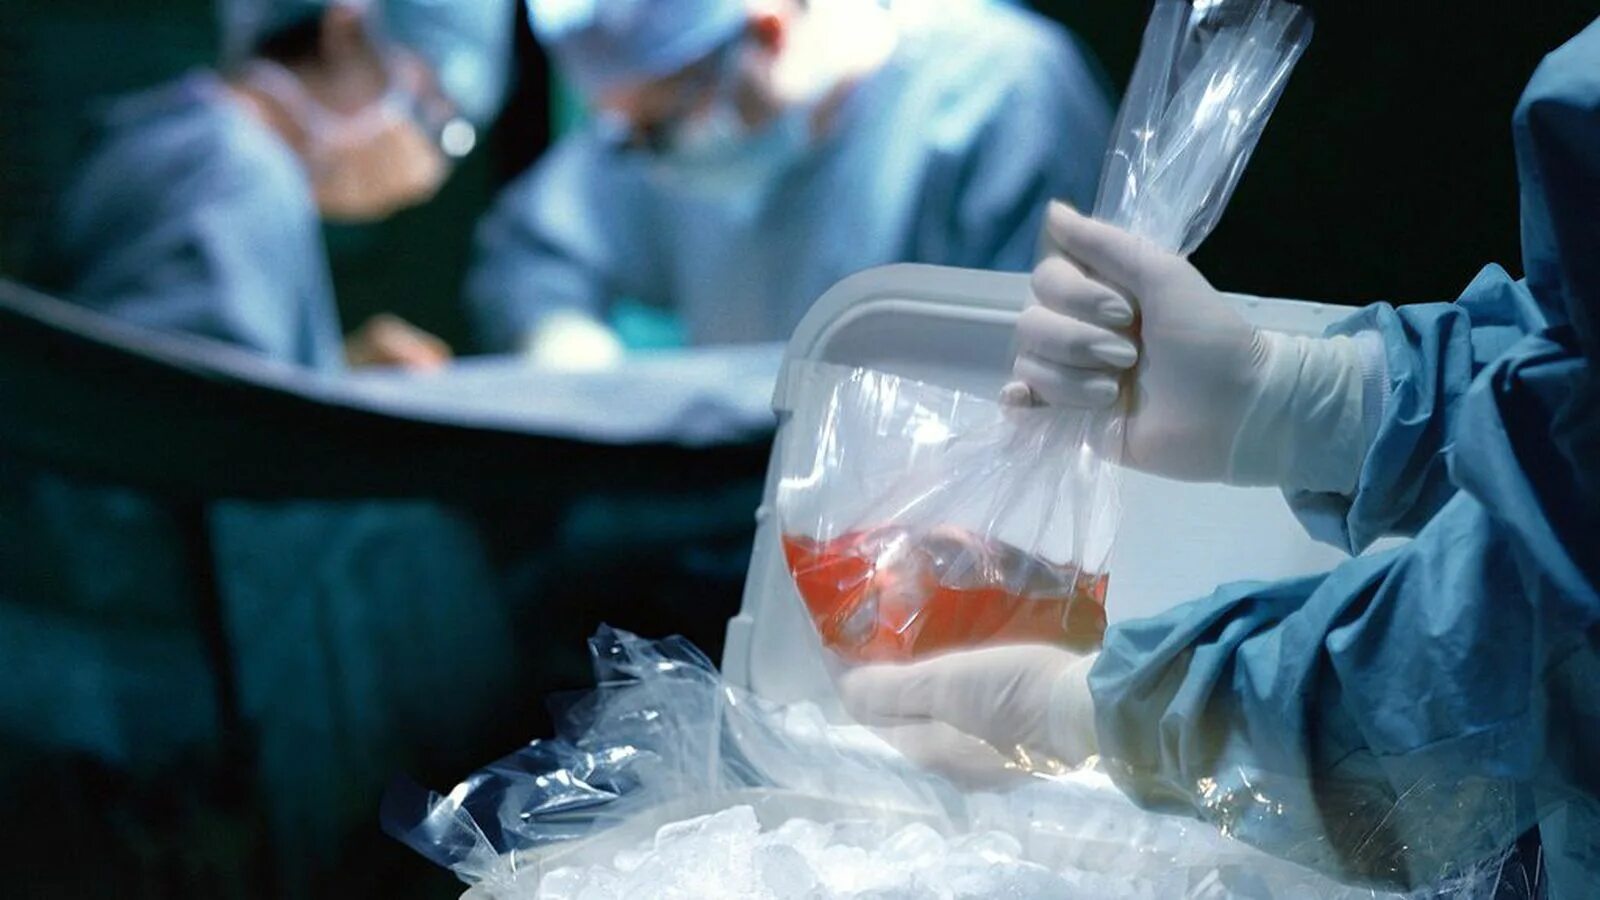 Пересадка от живого донора. Трансплантация органов и тканей. Консервирование тканей и органов. Трансплантация органов человека.